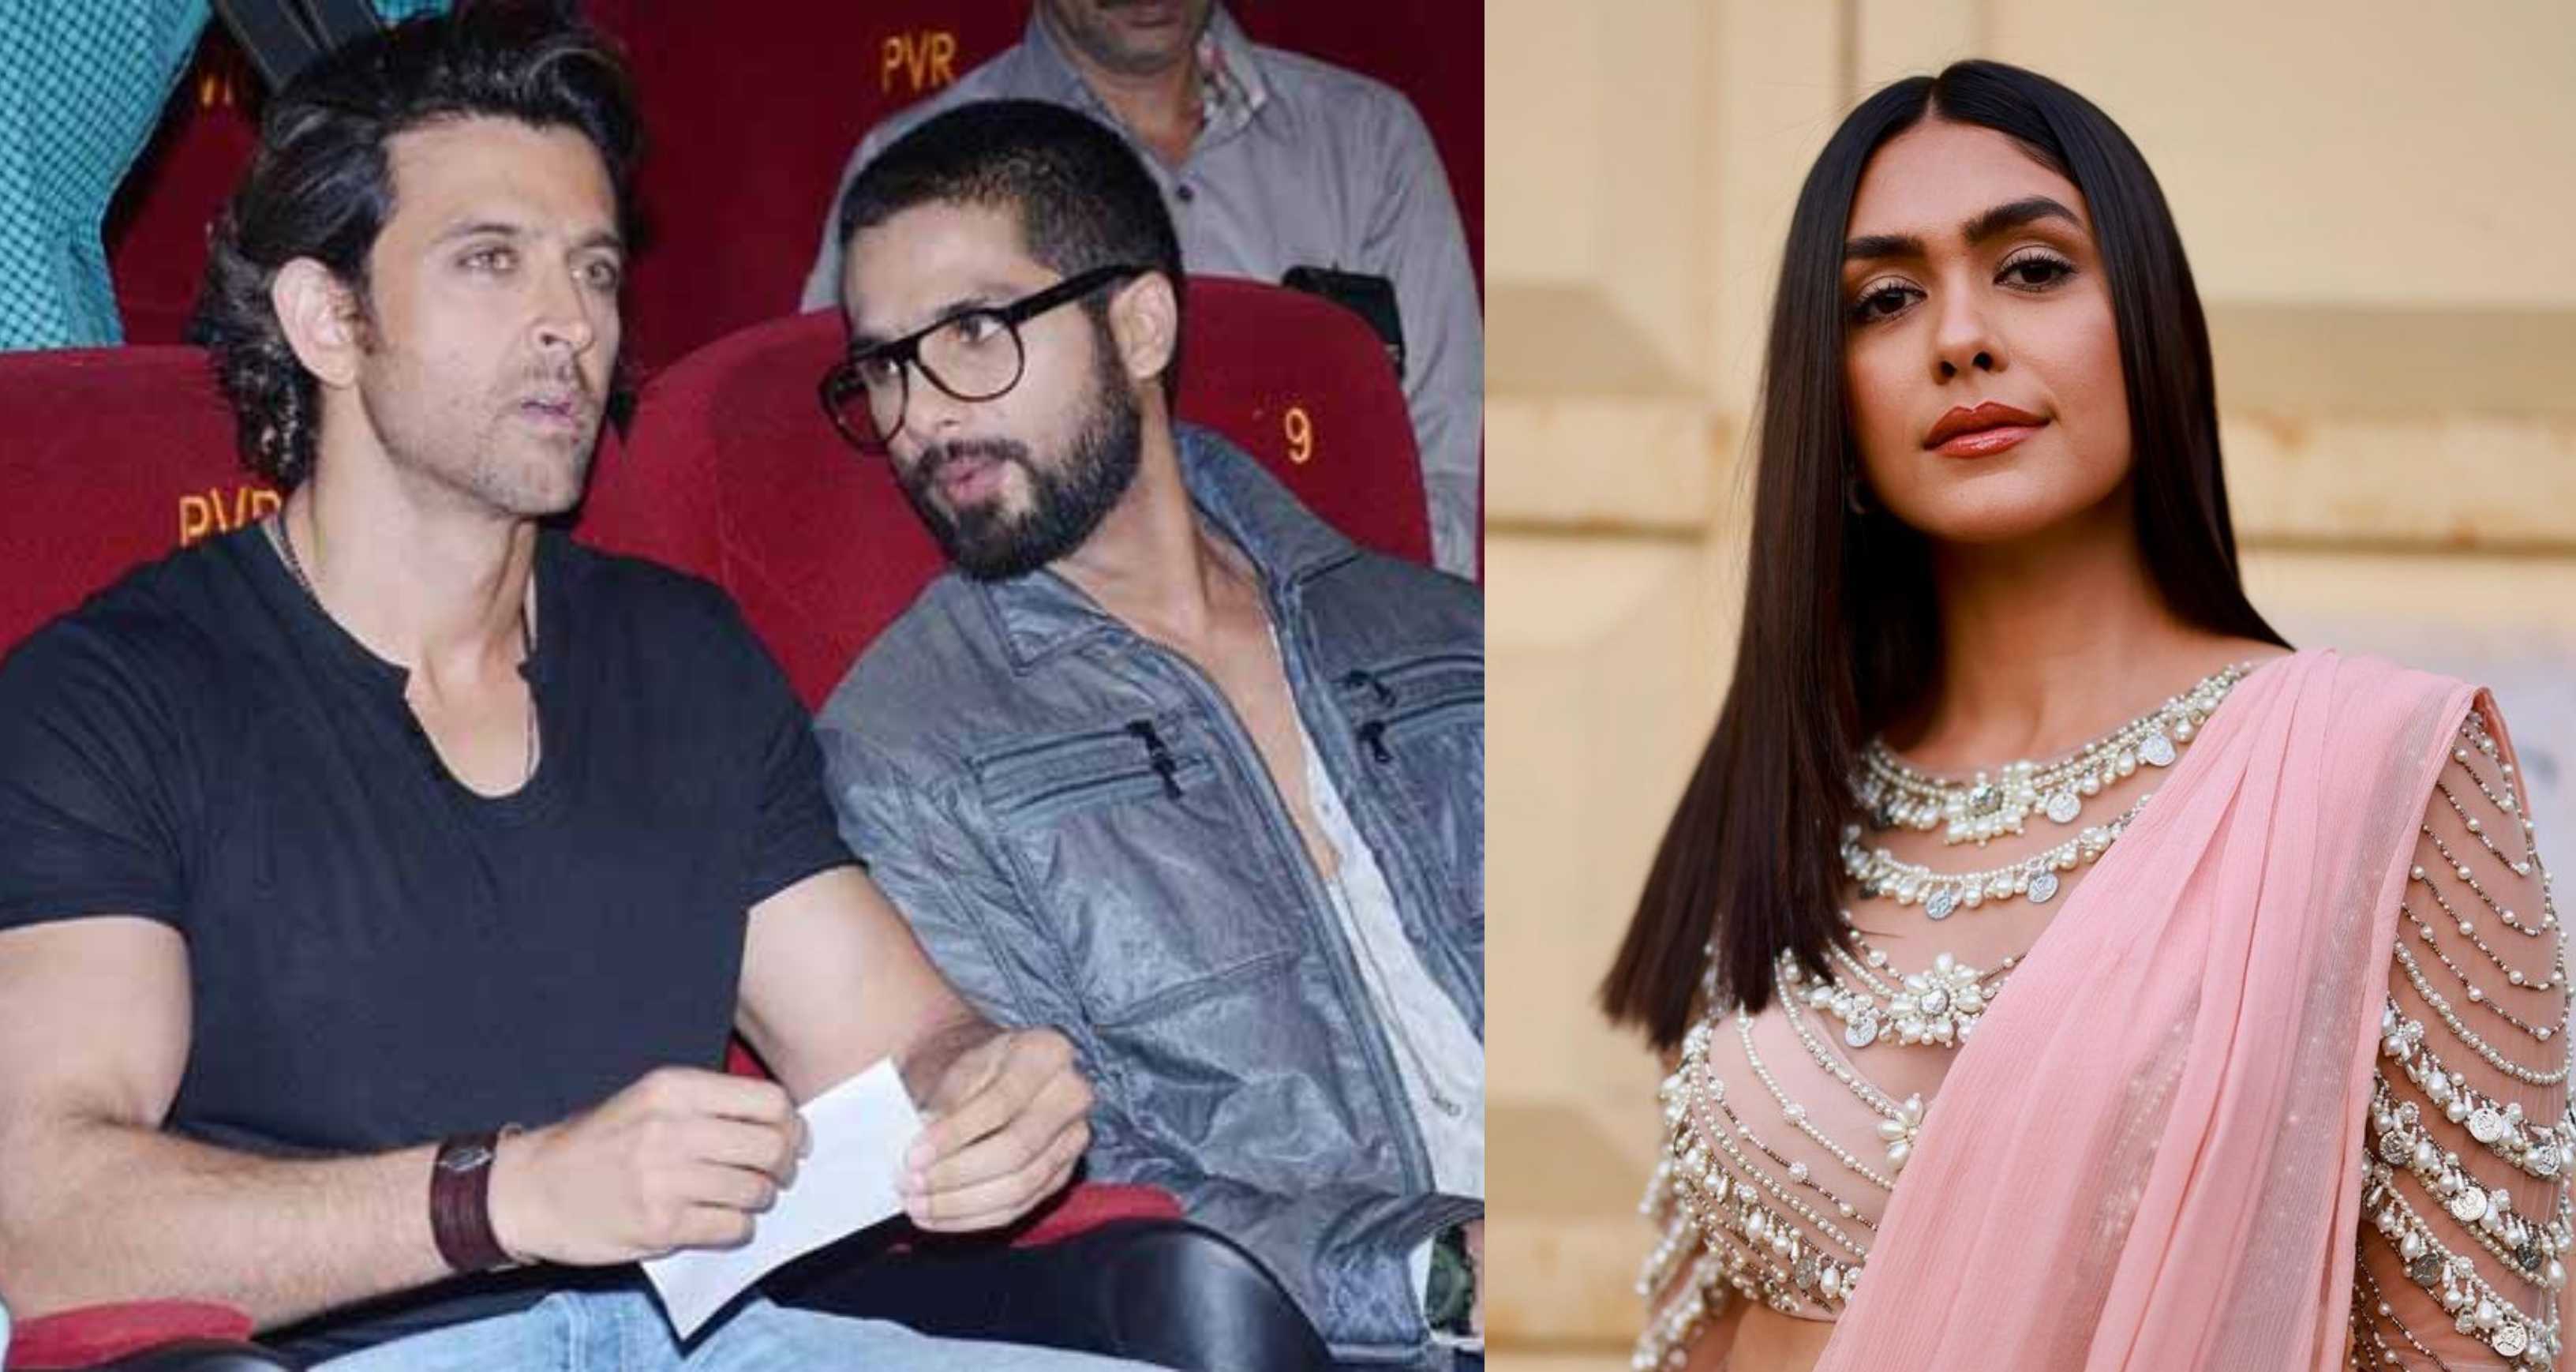 Shahid Kapoor wants to do a film like Haider with Hrithik Roshan; tells Mrunal Thakur ‘tu hi heroine hogi’